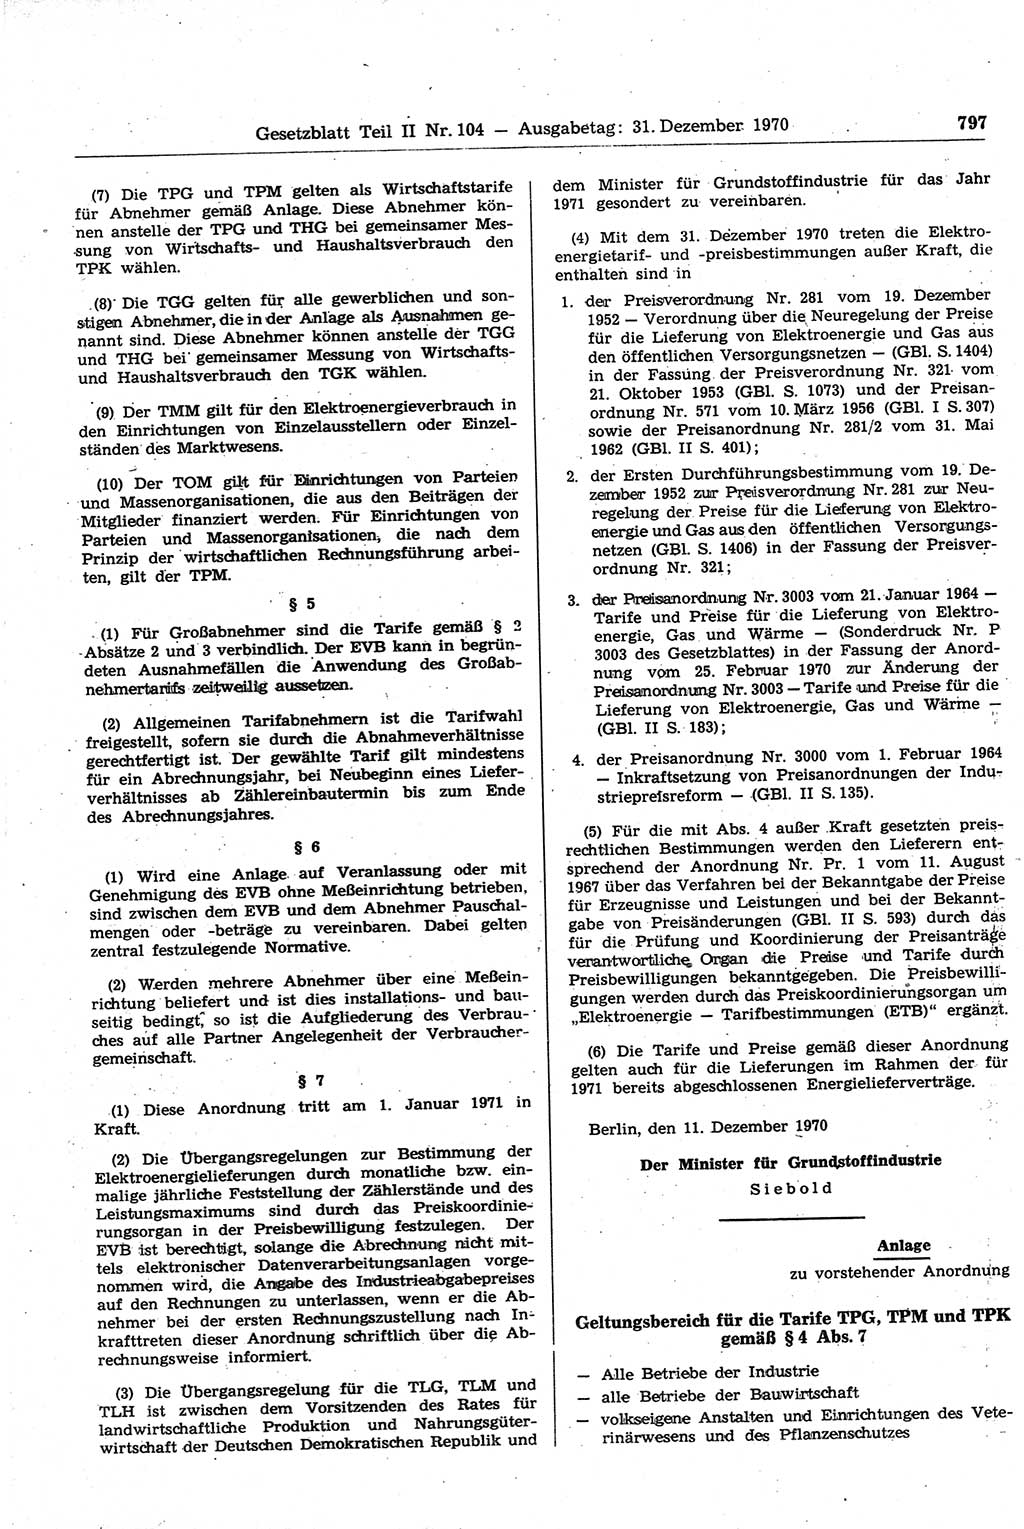 Gesetzblatt (GBl.) der Deutschen Demokratischen Republik (DDR) Teil ⅠⅠ 1970, Seite 797 (GBl. DDR ⅠⅠ 1970, S. 797)